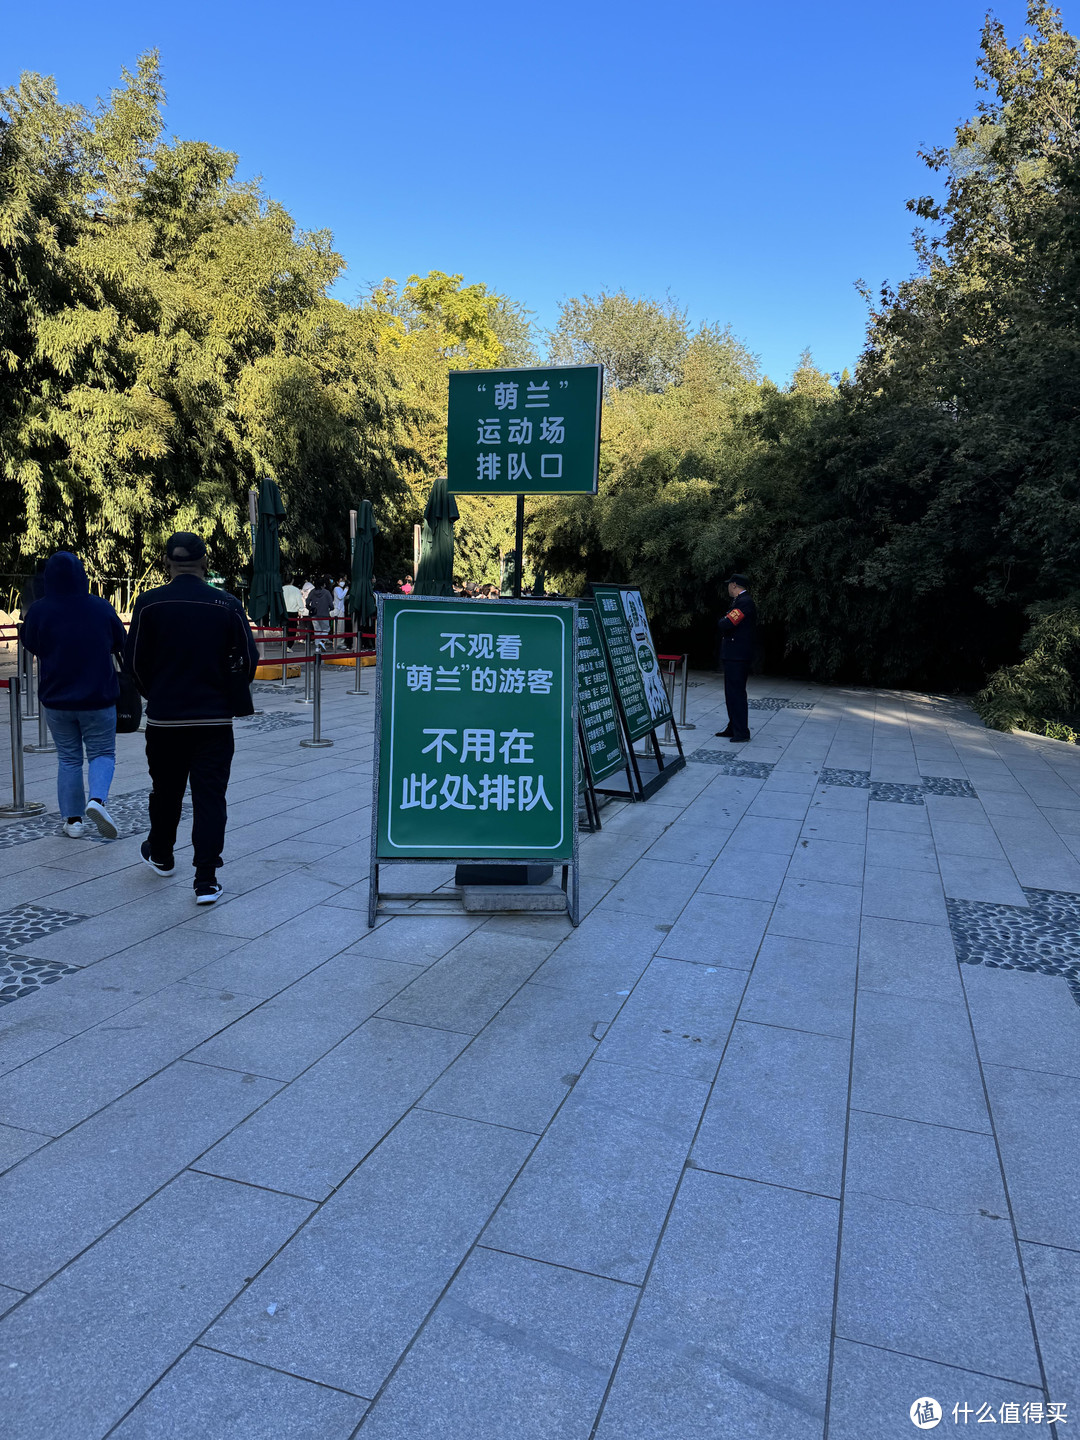 北京动物园看熊猫